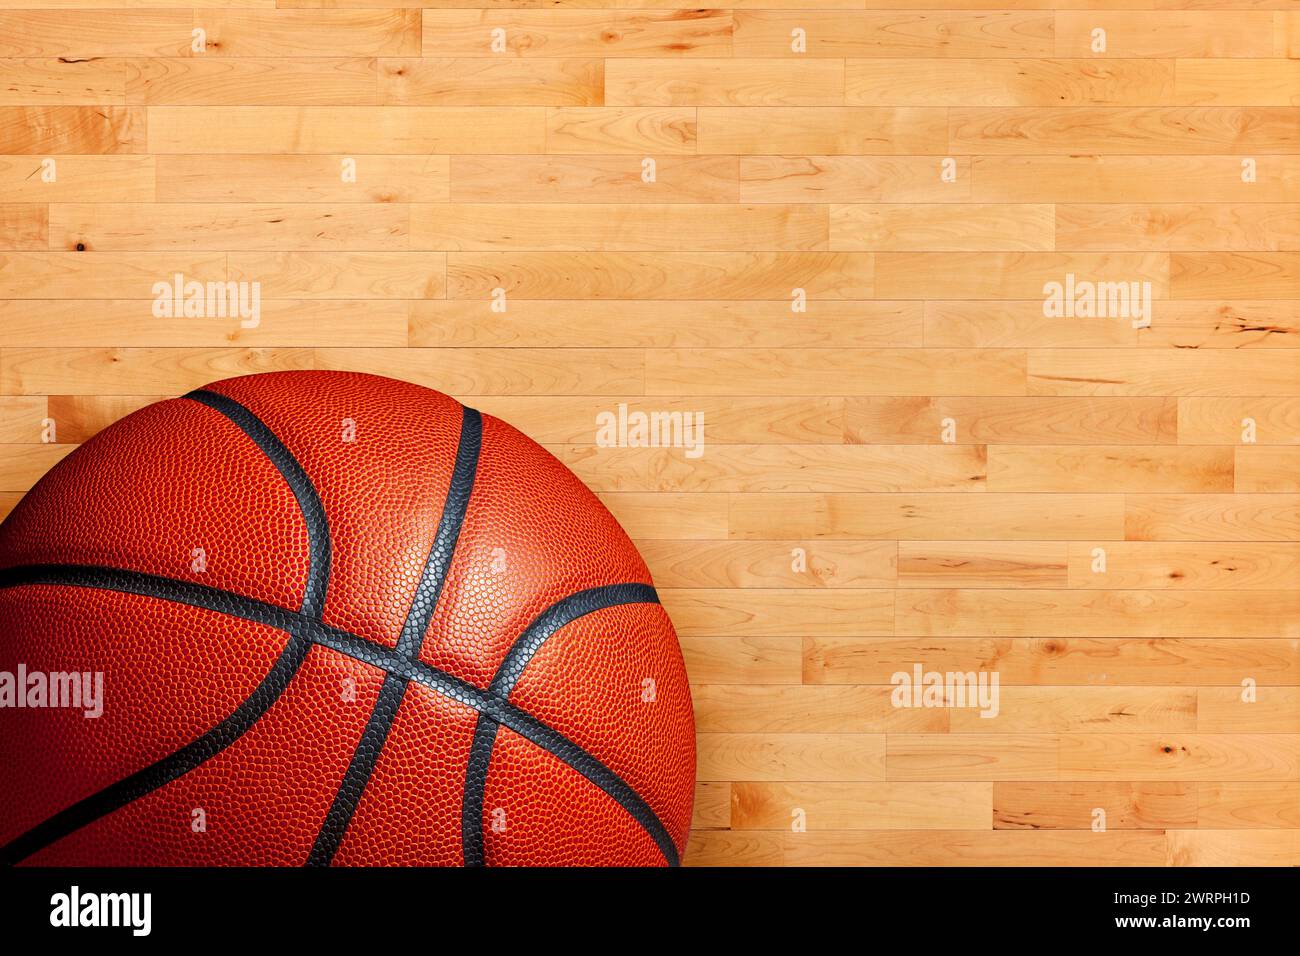 Basketball- und Hartholz-Ahorn-Basketballfußboden von oben gesehen Stockfoto